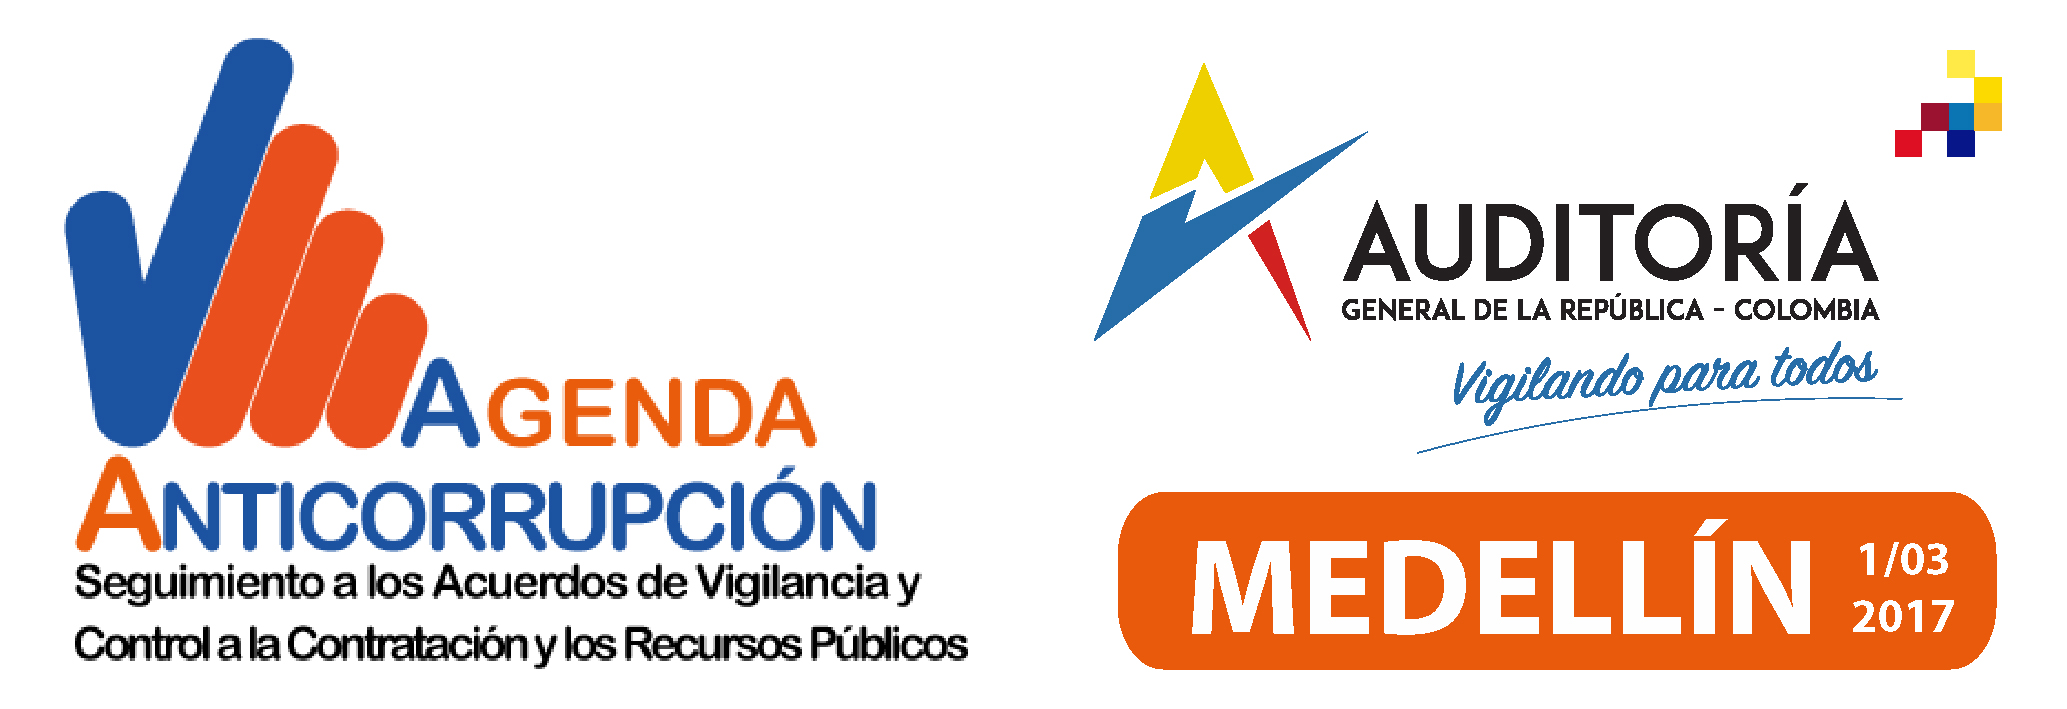 Agenda Anticorrupción - Medellín